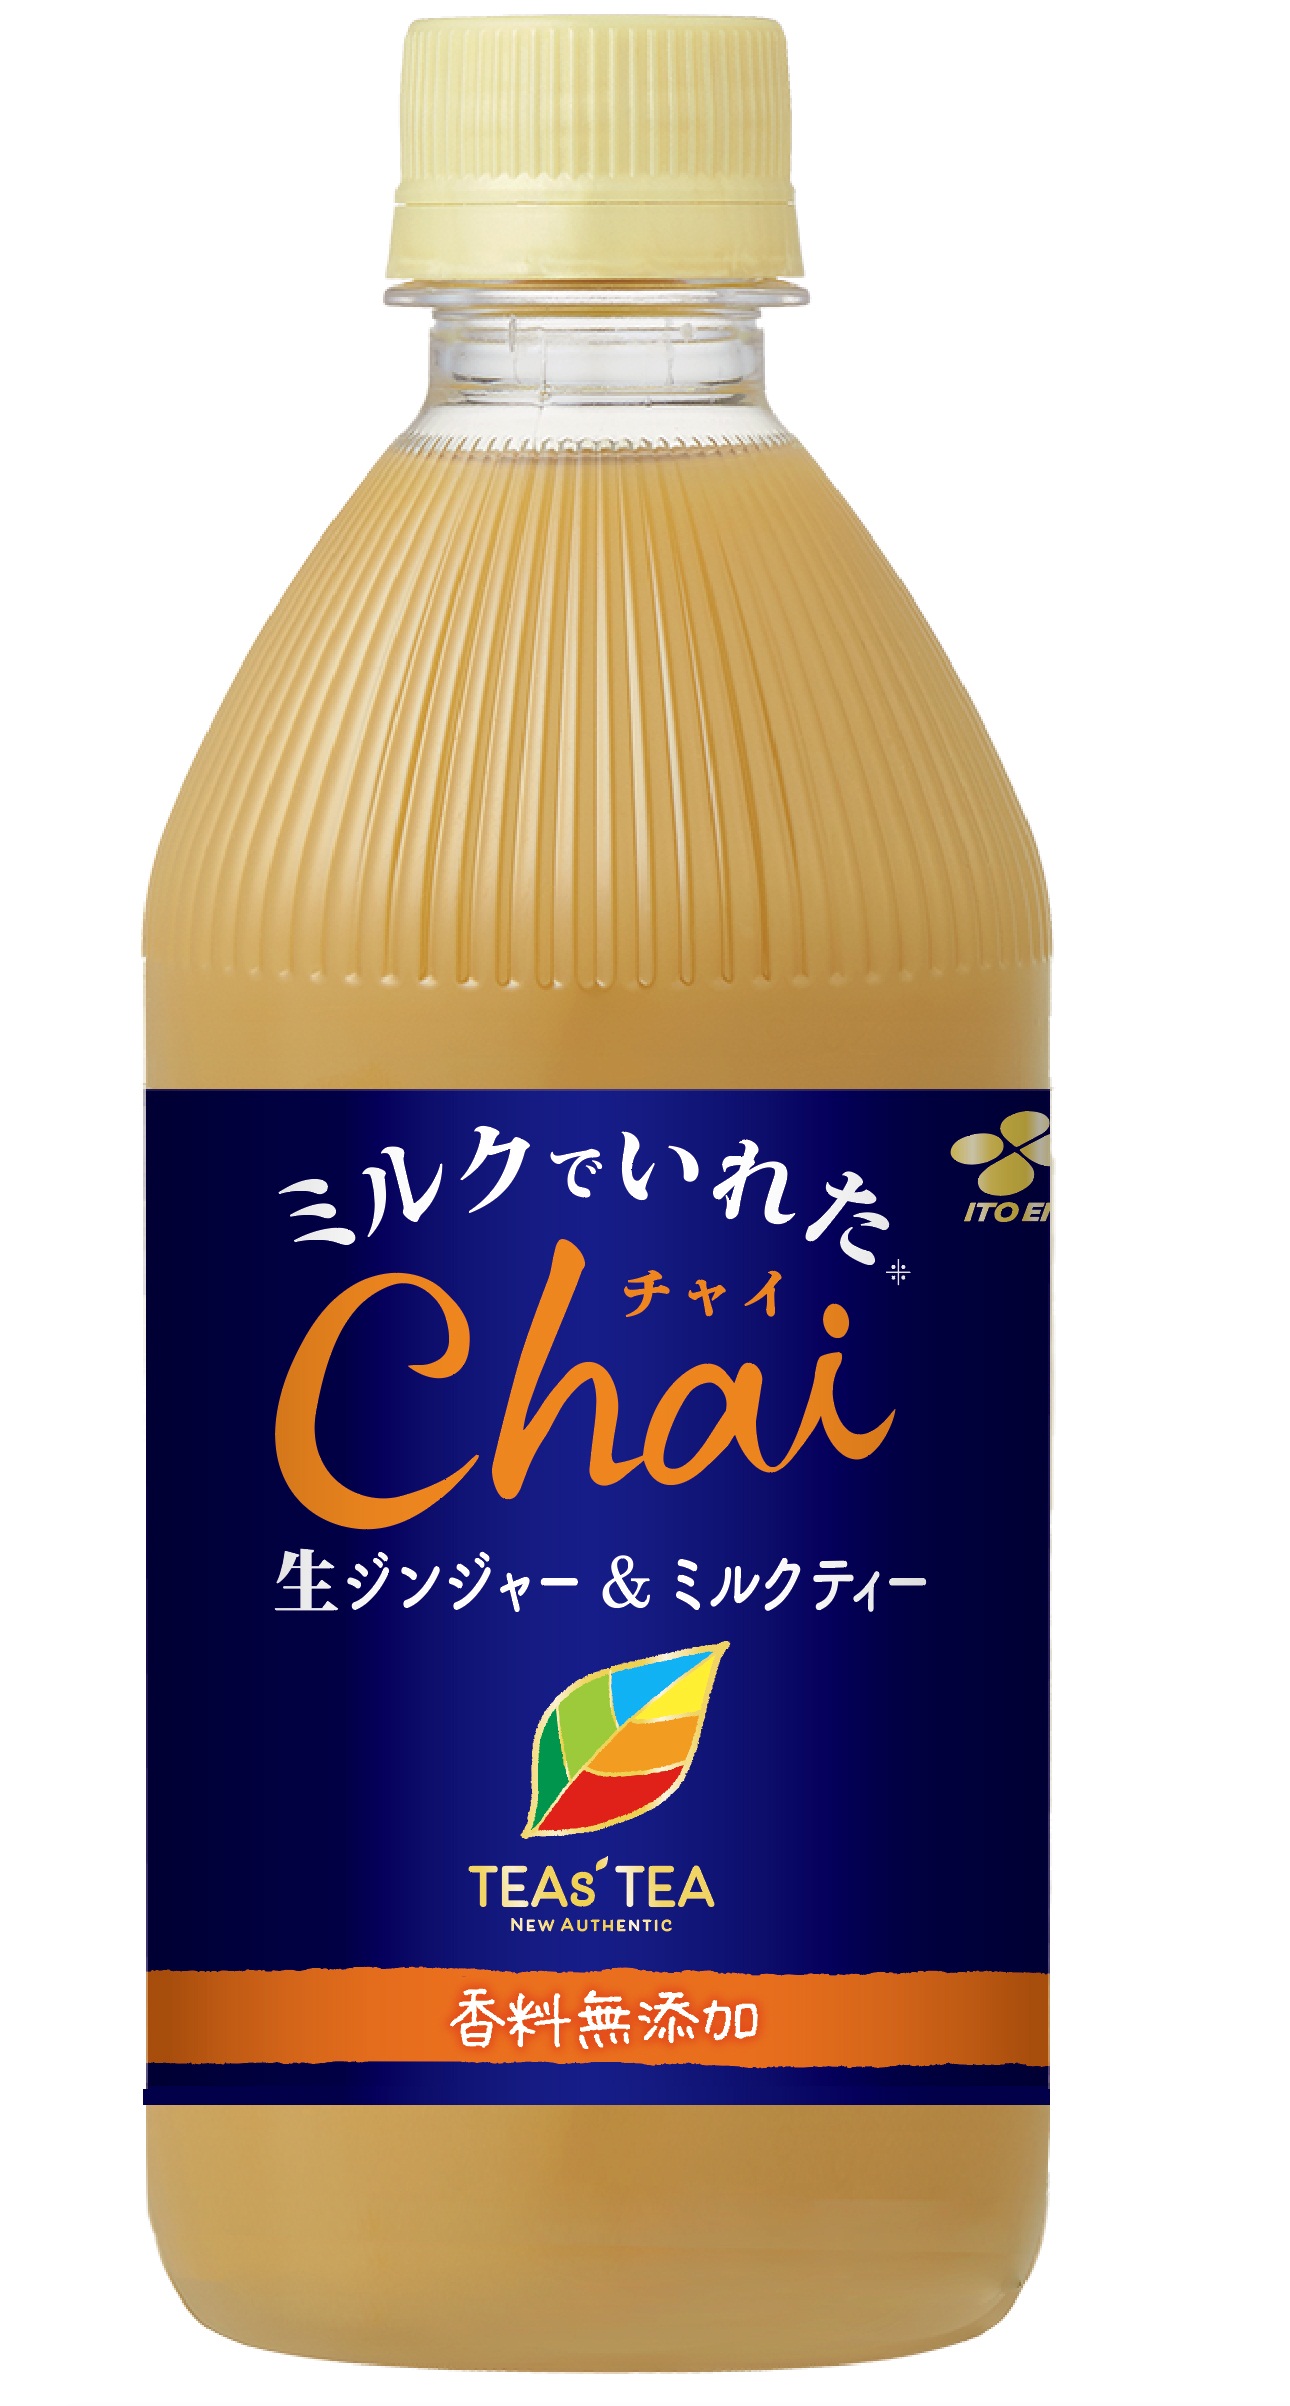 Teas Tea New Authentic ミルクでいれたchai 12月9日 月 新発売 ニュースリリース 伊藤園